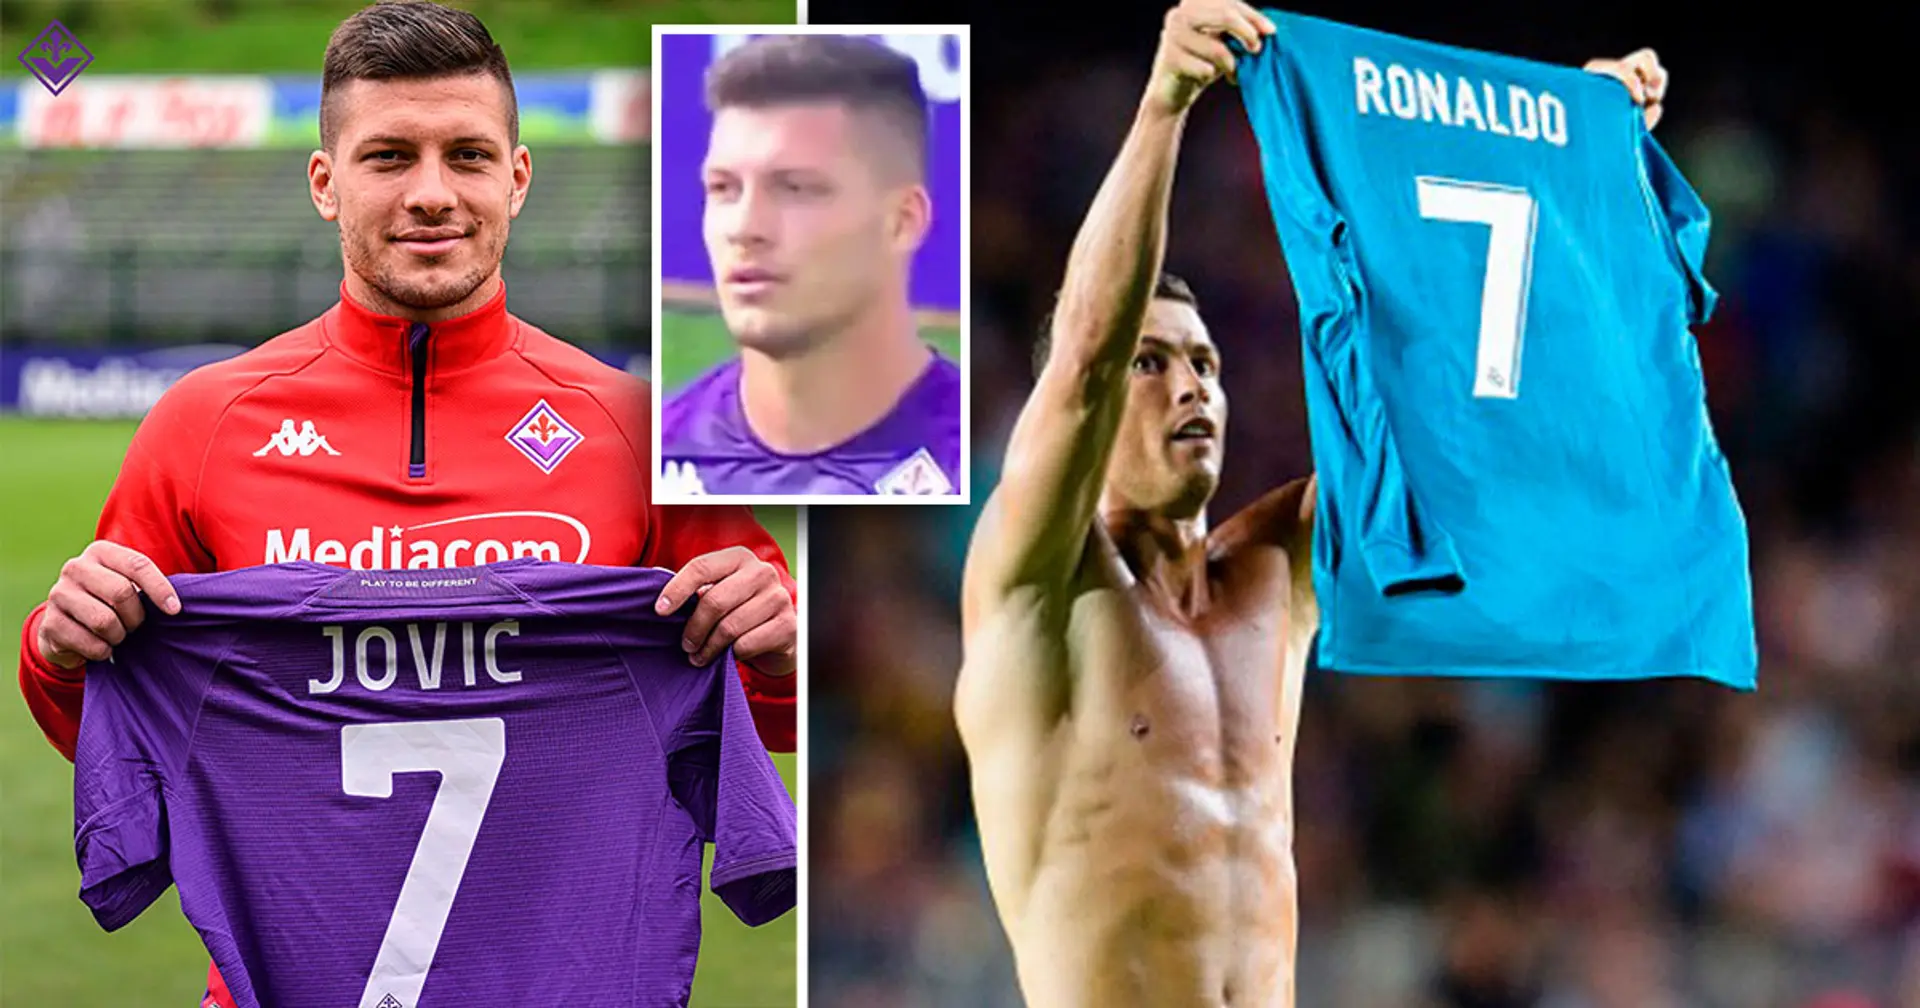 Jovic: Ich habe mich für Nummer 7 bei Fiorentina dank Ronaldo entschieden, dem größten Spieler aller Zeiten